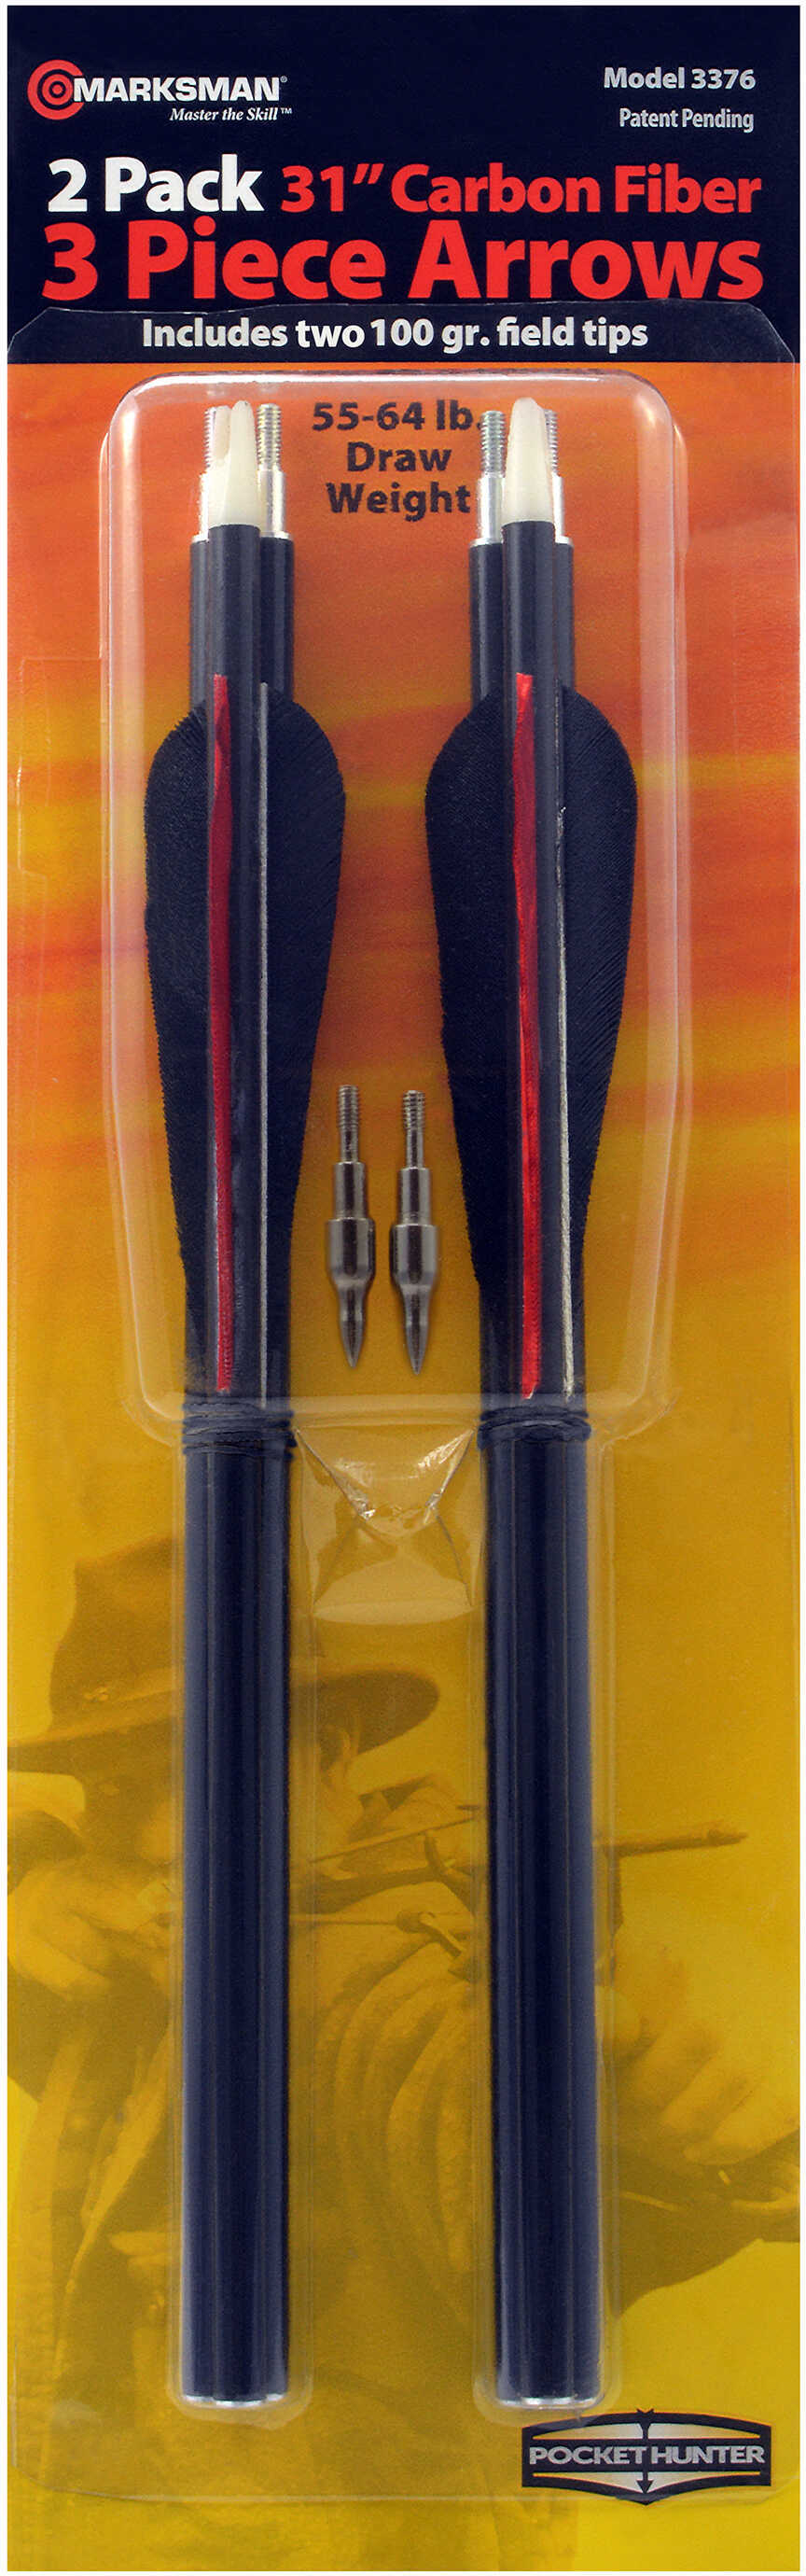 Marksman Carbon Fiber Arrows Three Piece Kit, Black Md: 3376